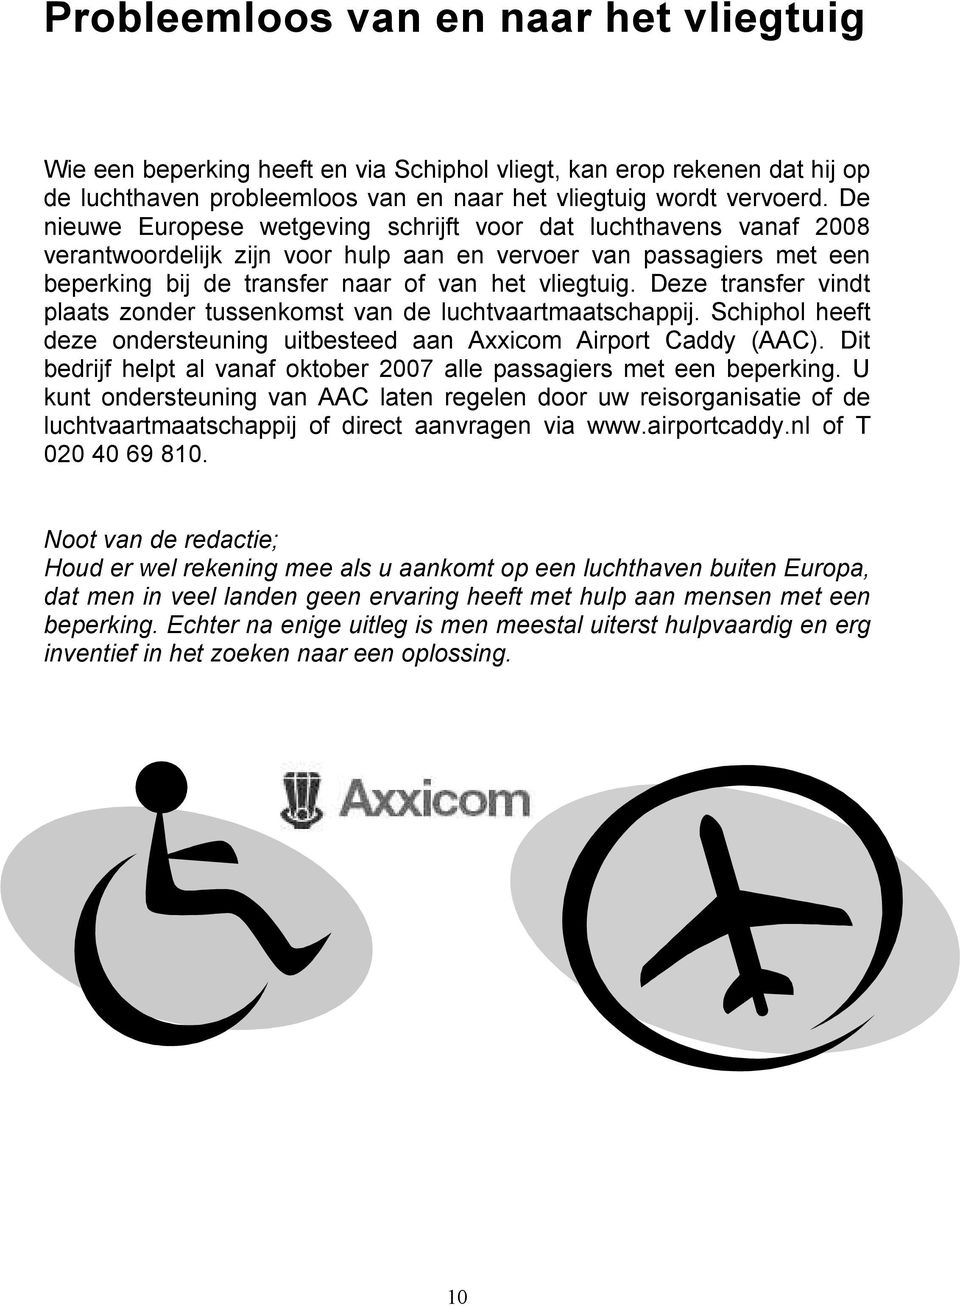 Deze transfer vindt plaats zonder tussenkomst van de luchtvaartmaatschappij. Schiphol heeft deze ondersteuning uitbesteed aan Axxicom Airport Caddy (AAC).